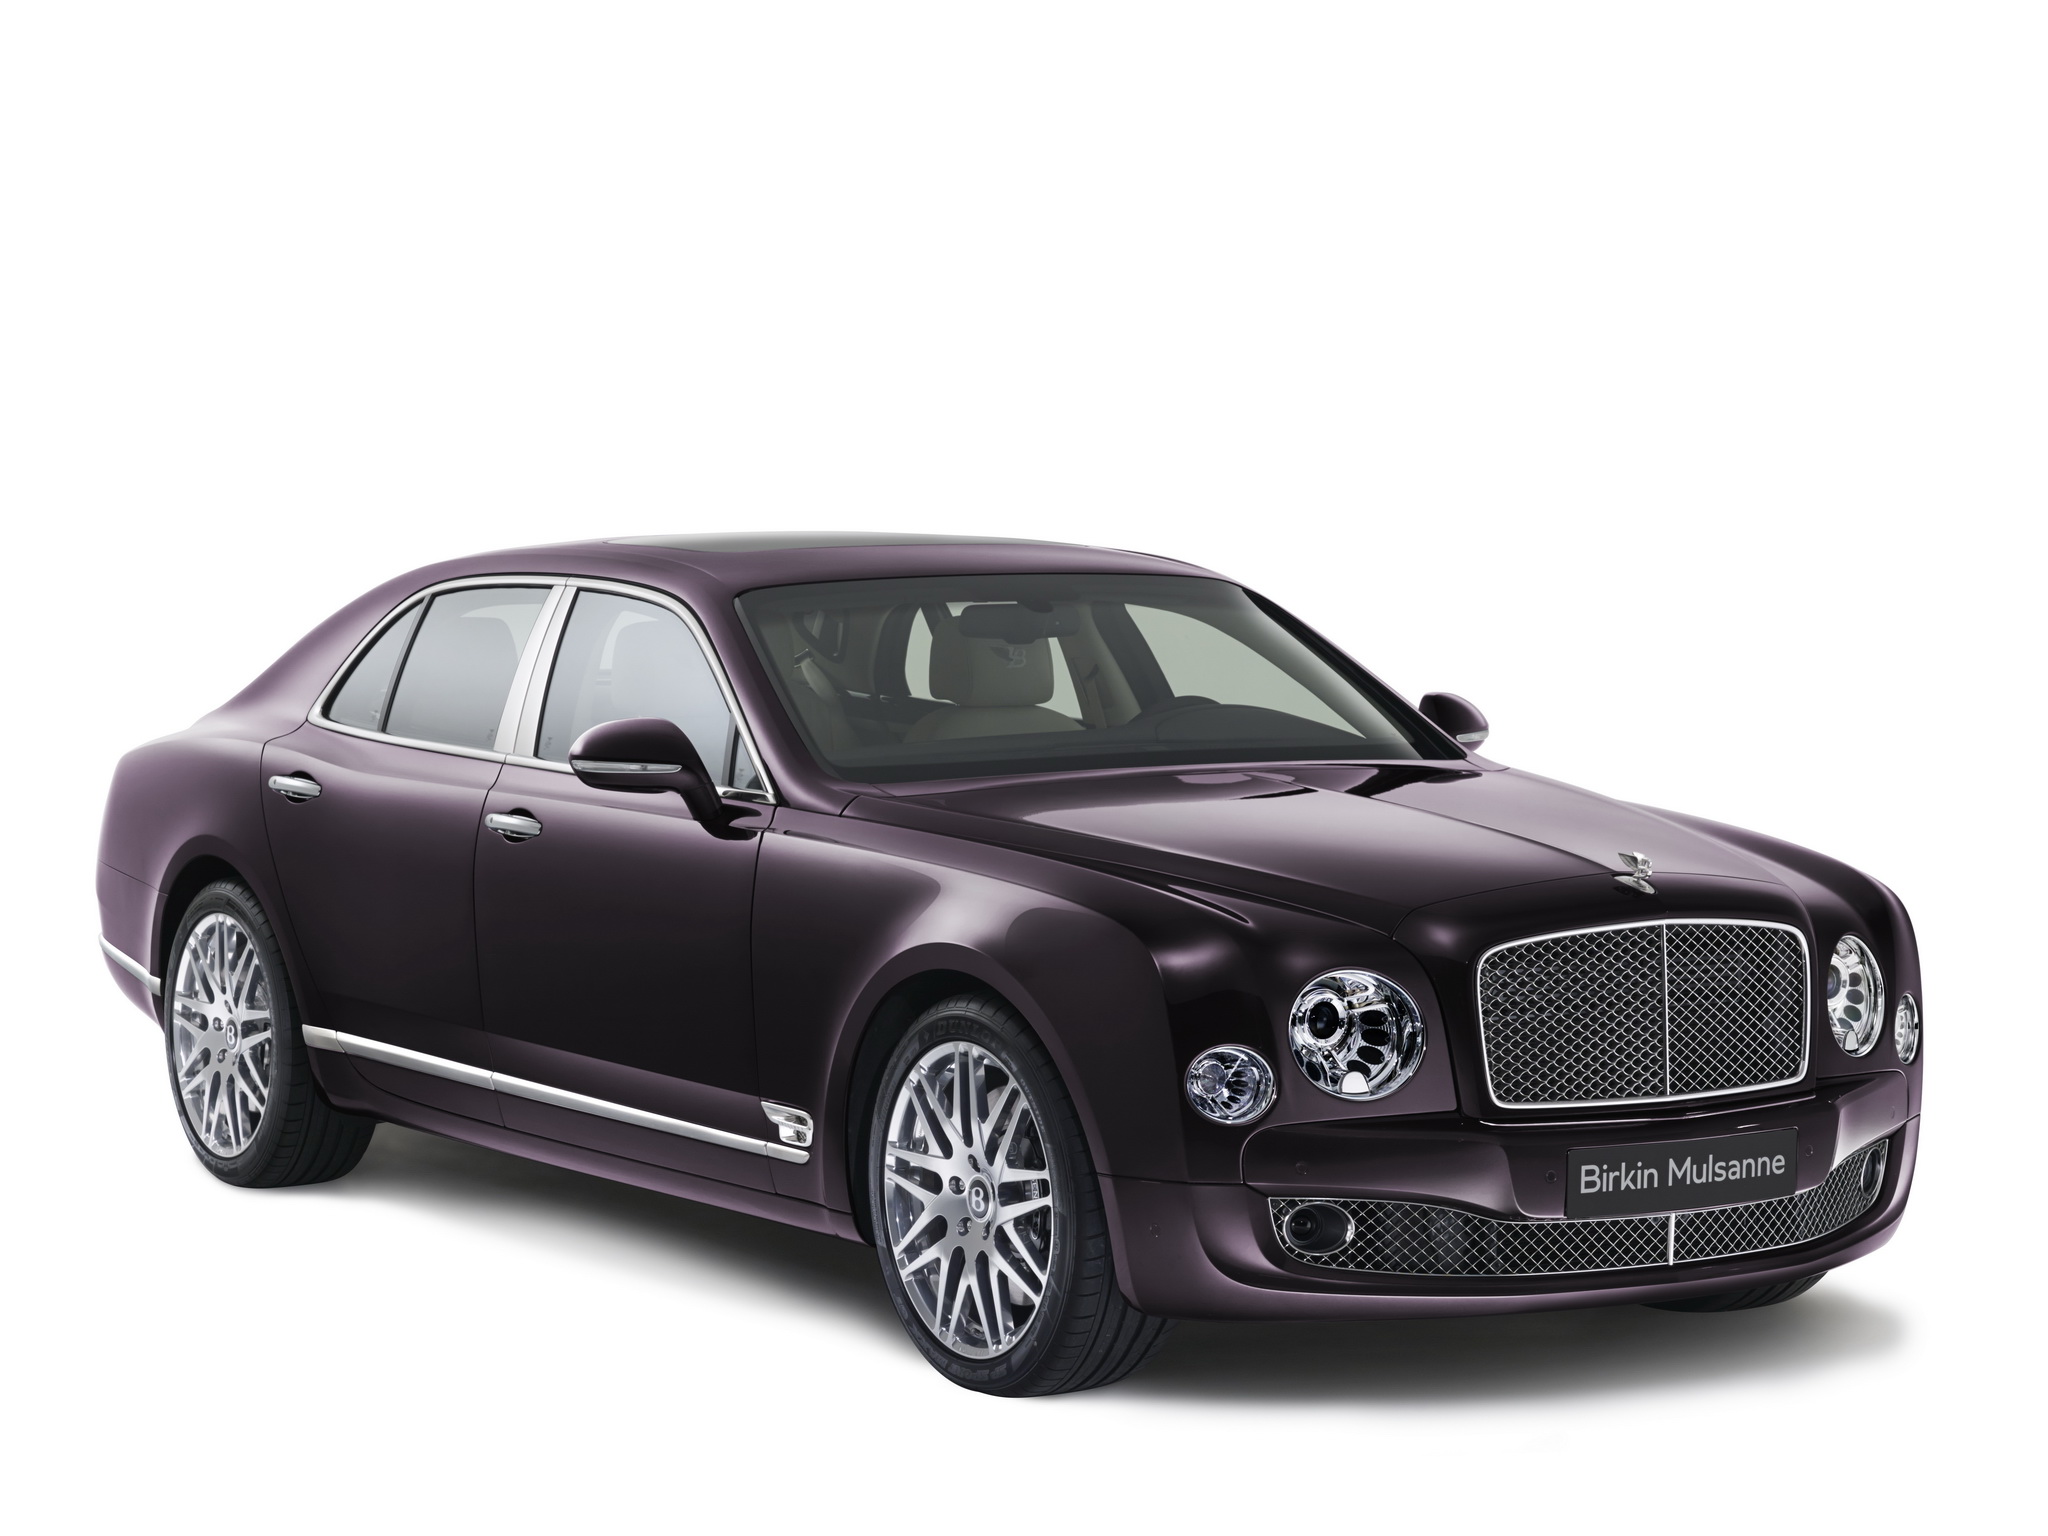 2014, Bentley, Birkin, Mulsanne, Luxury Wallpaper